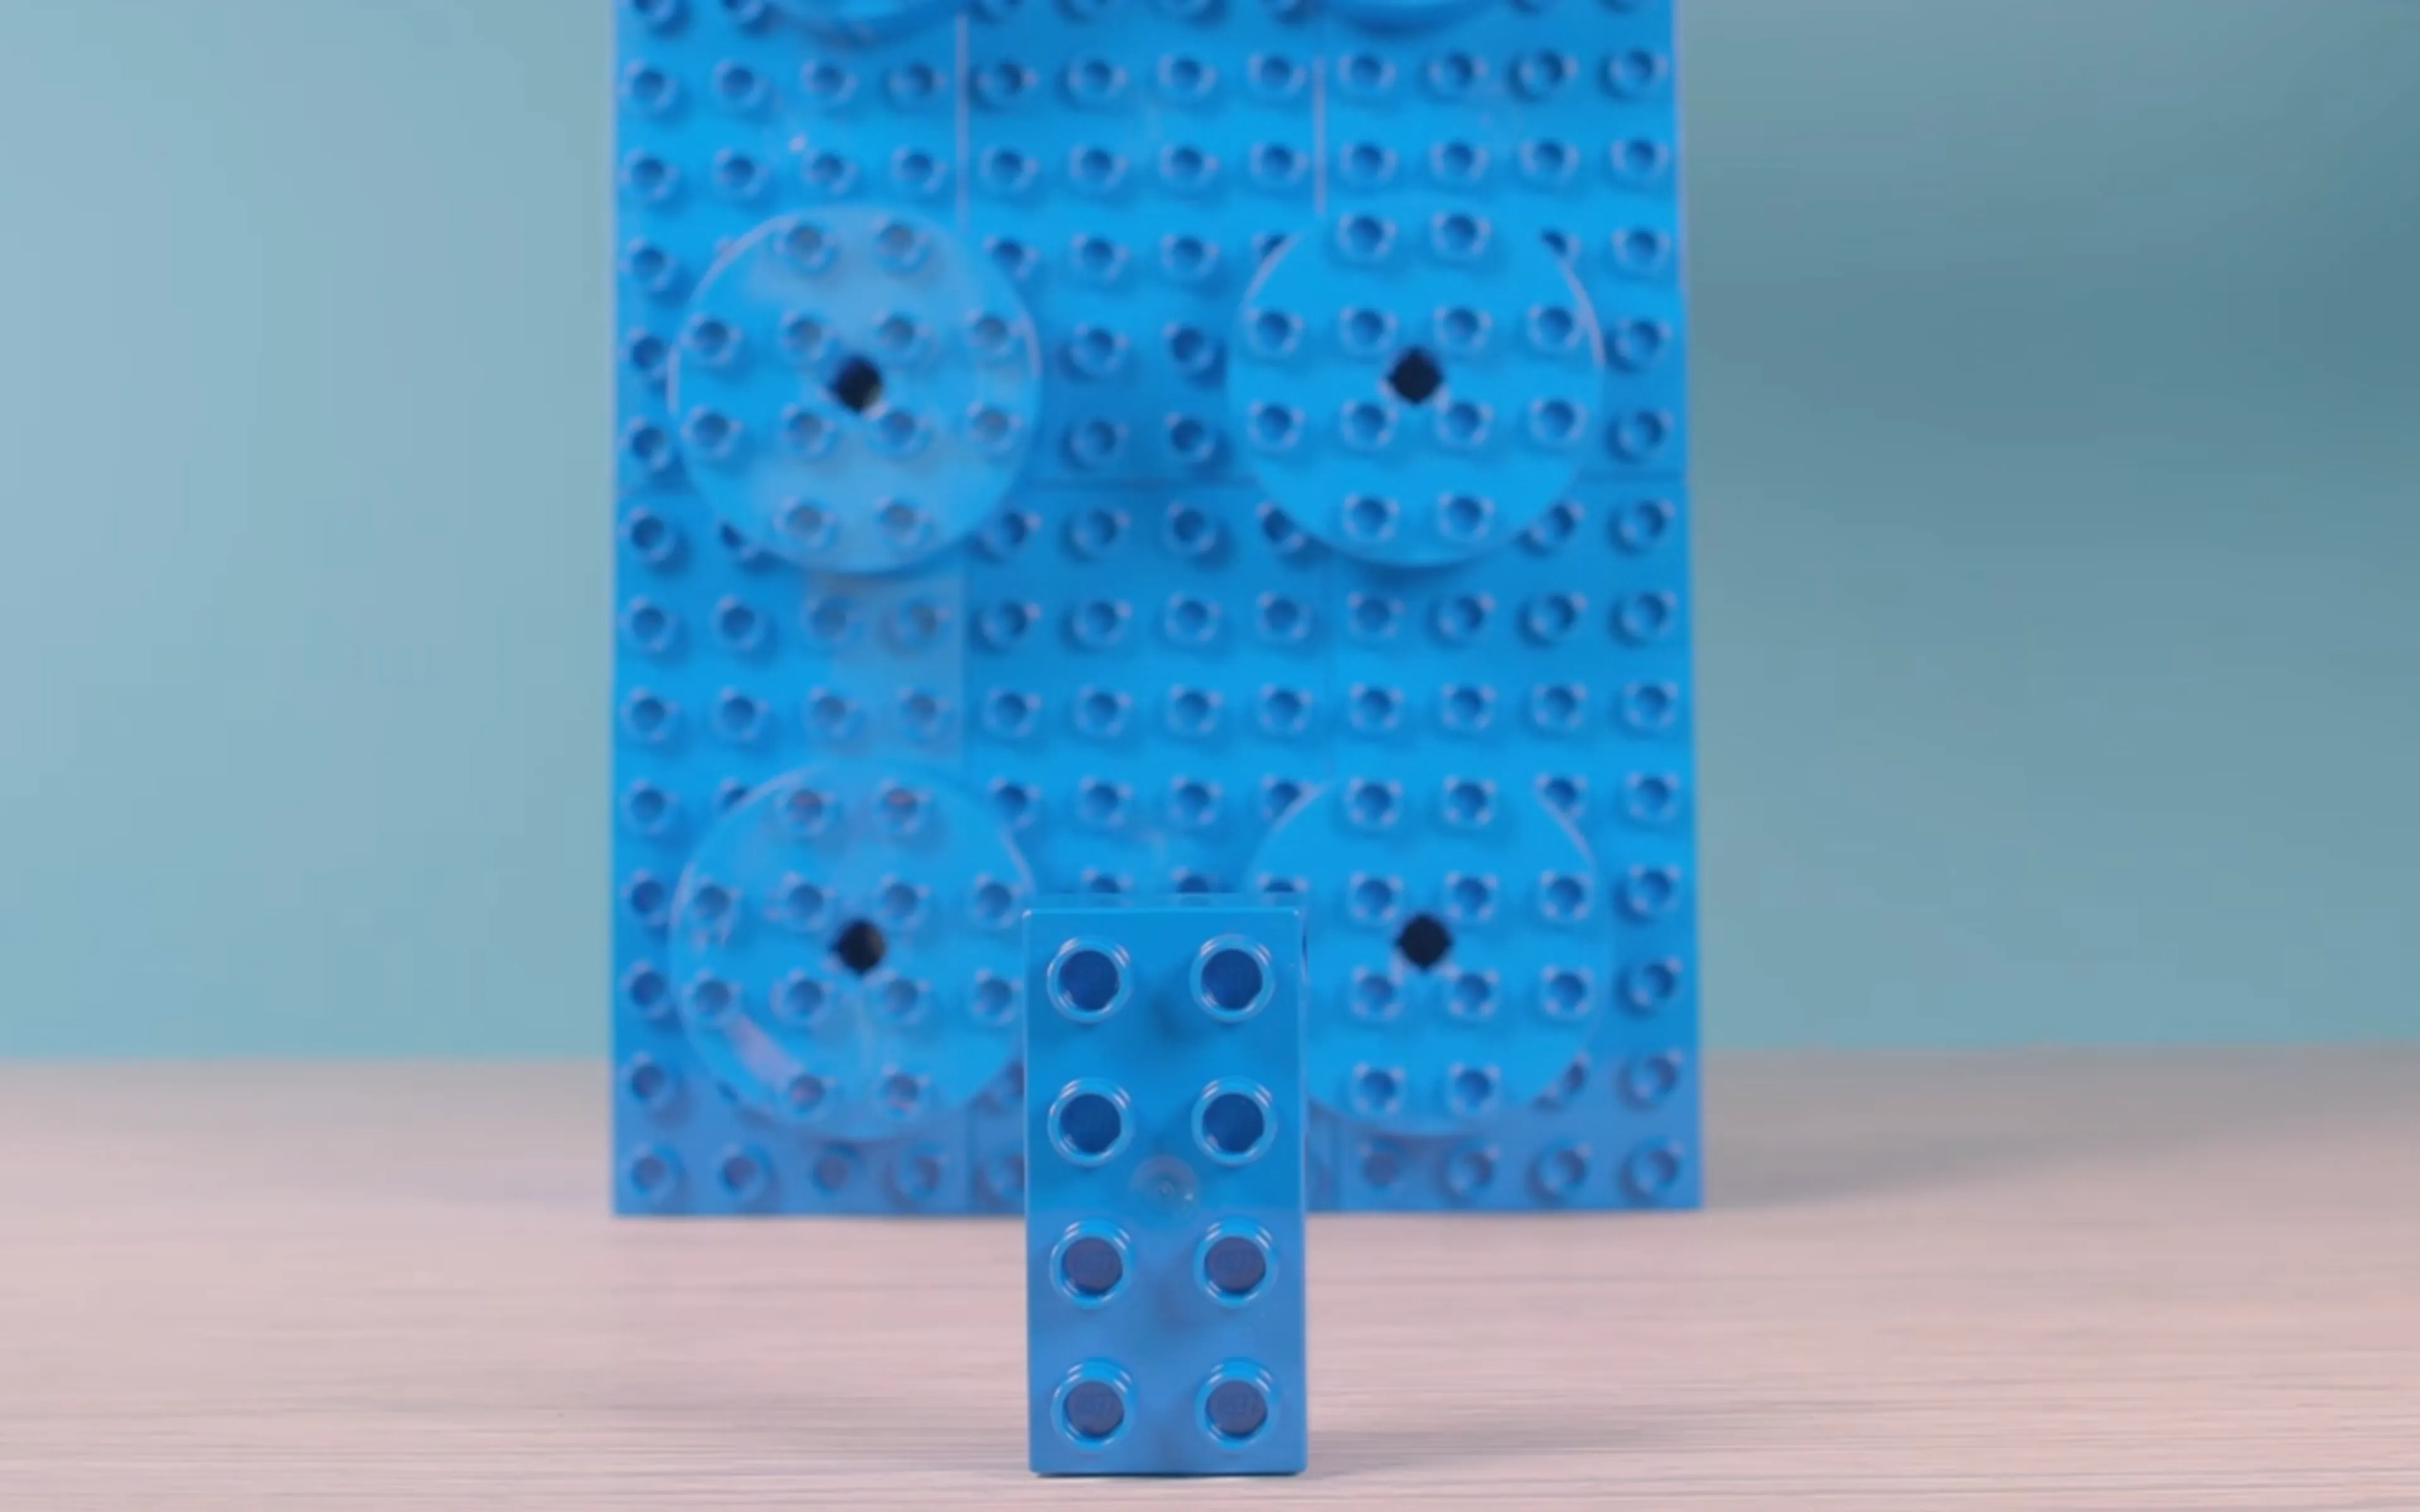 Et billede af en tung LEGO klods ved siden af en let